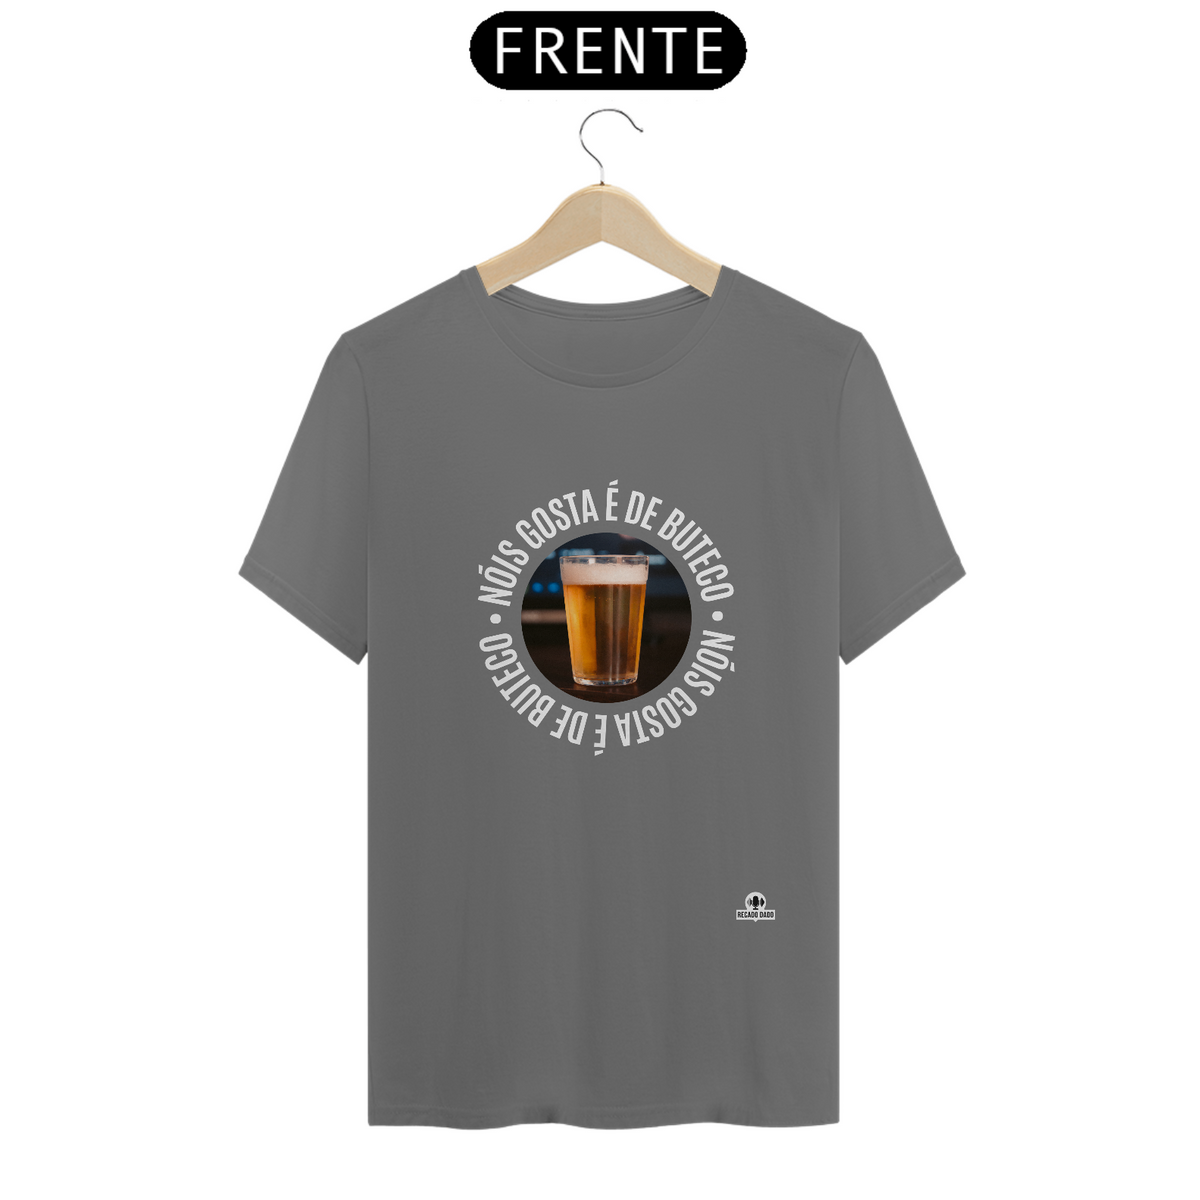 Nome do produto: Camiseta estonada “Nóis Gosta É de Boteco” com imagem de um Copo americano de Cerveja.